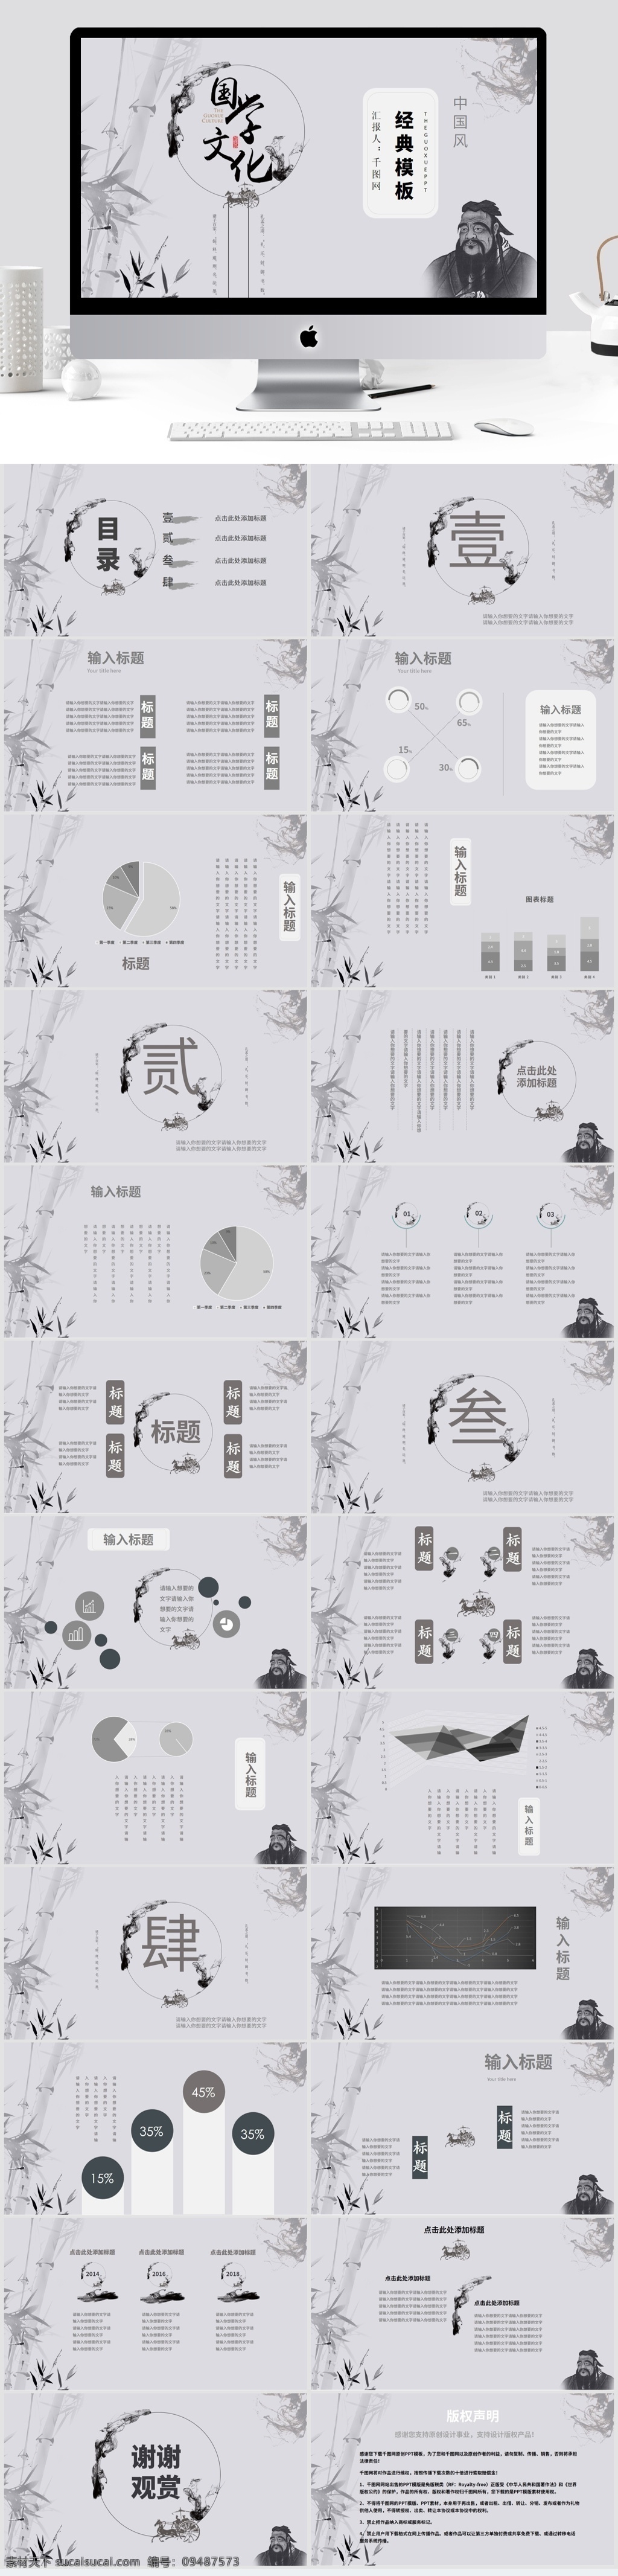 中国 风 国学 文化 经典 模板 孔子 竹子 国学文化 水墨画 中国风 计划总结 工作汇报 总结